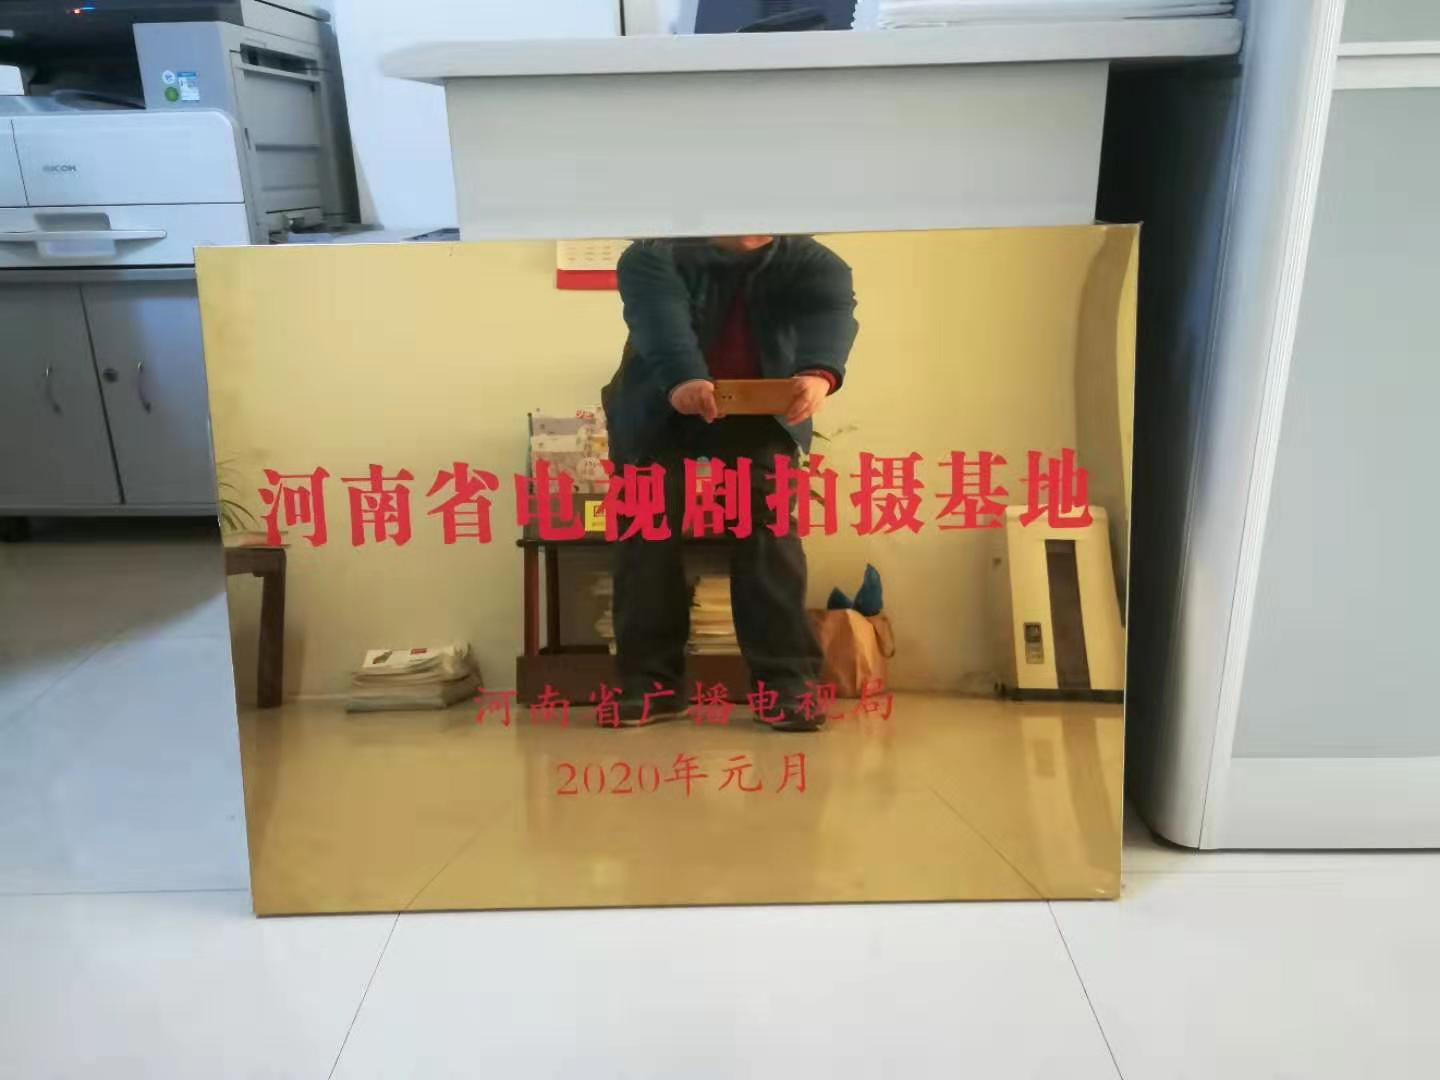 河南省广电电视局授予焦作市云台山景区“河南省电视剧拍摄基地”牌匾。